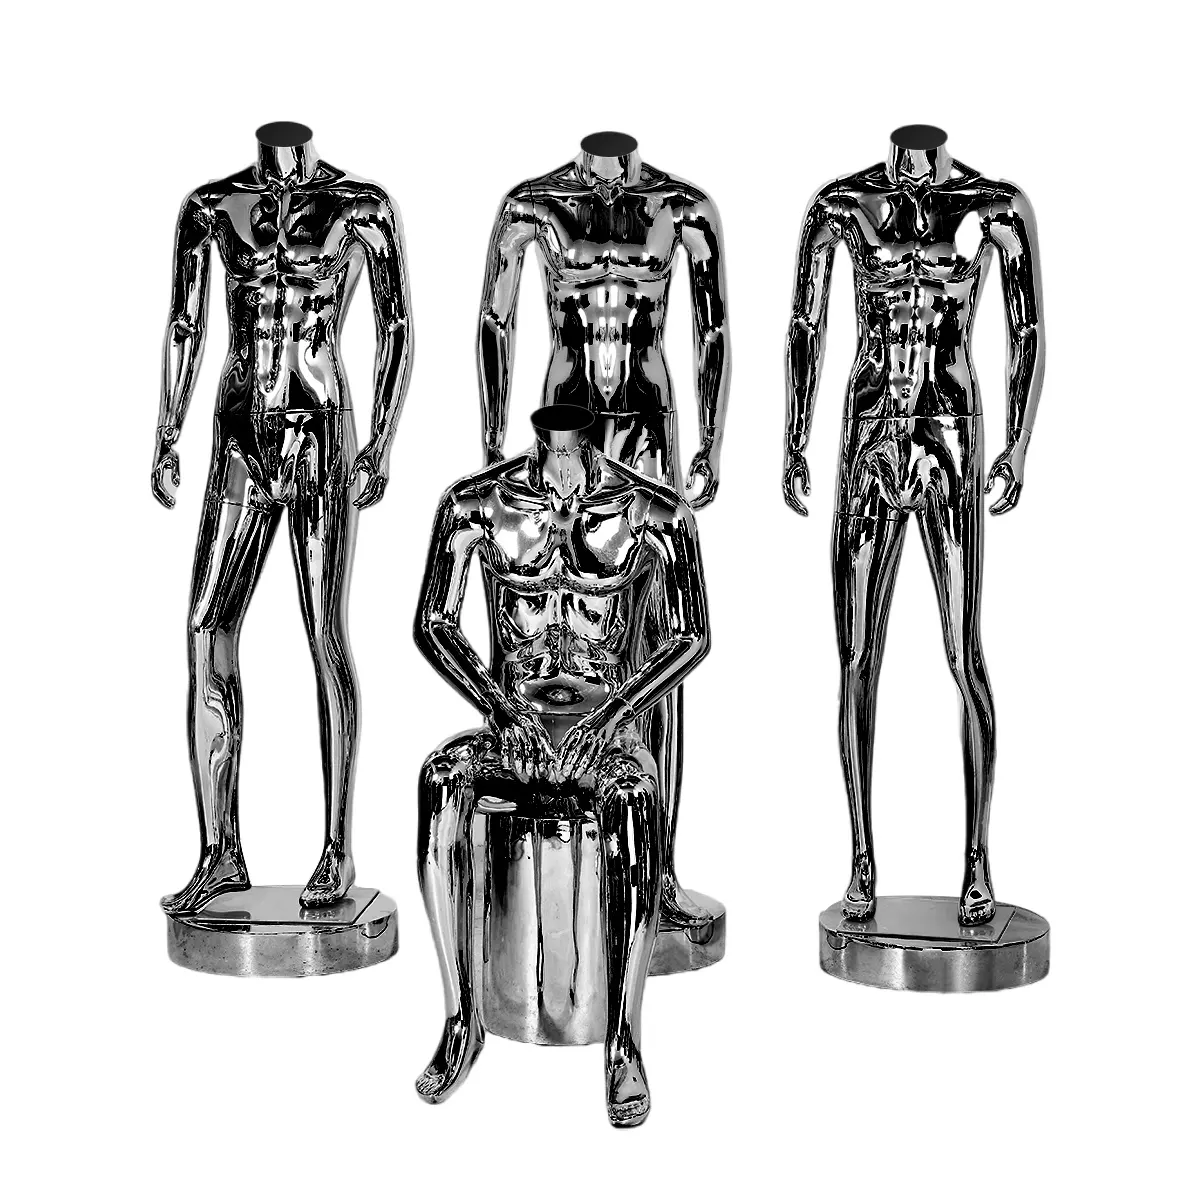 الكروم الأسود الفاخرة الدائمة الرجال نموذج الطلاء الرأس عارضة أزياء الذكور كامل الجسم لعرض متجر الملابس